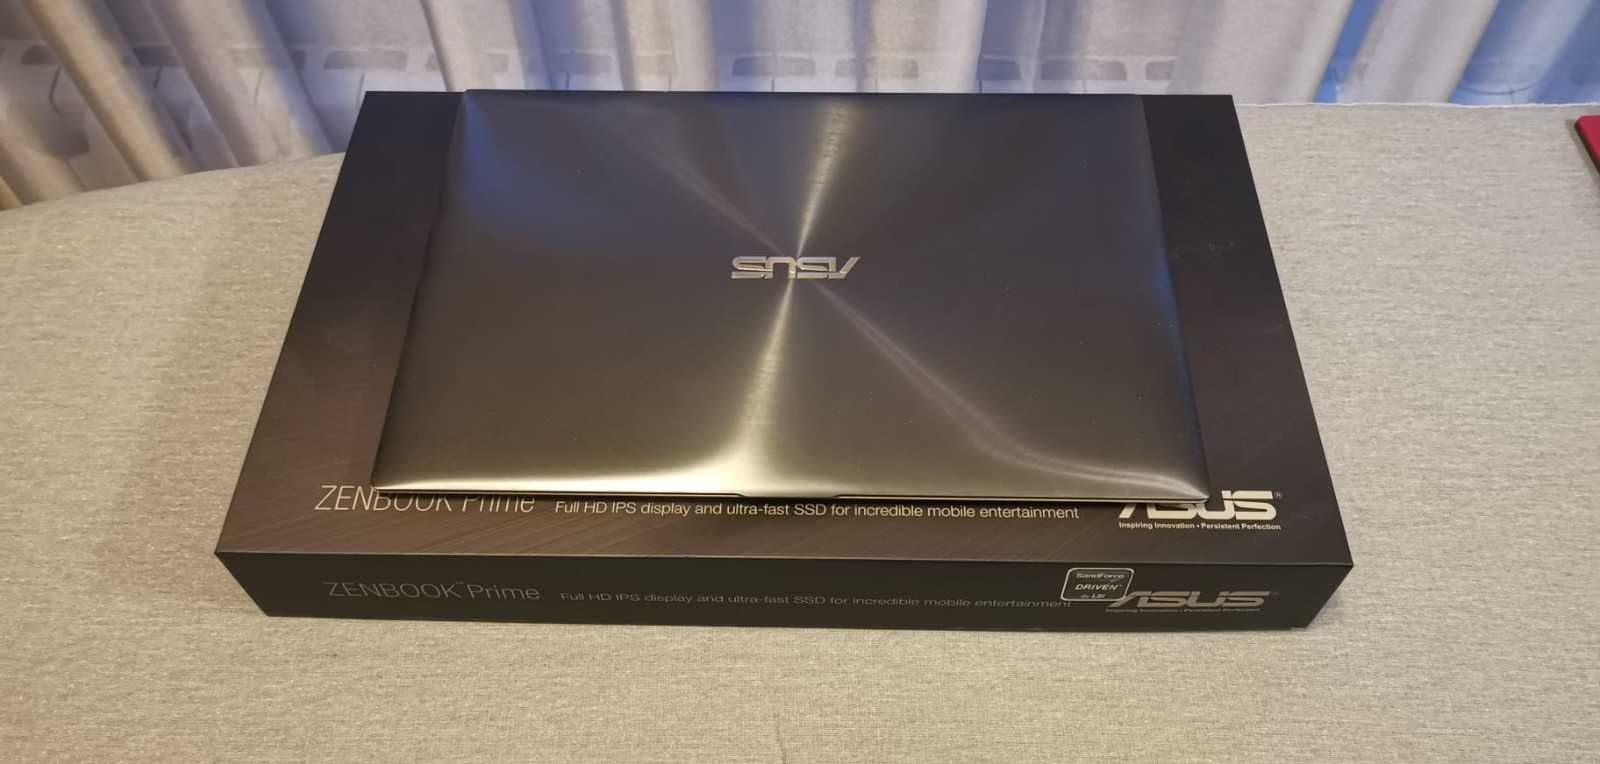 Asus Zenbook Prime UX31A Ultrabook